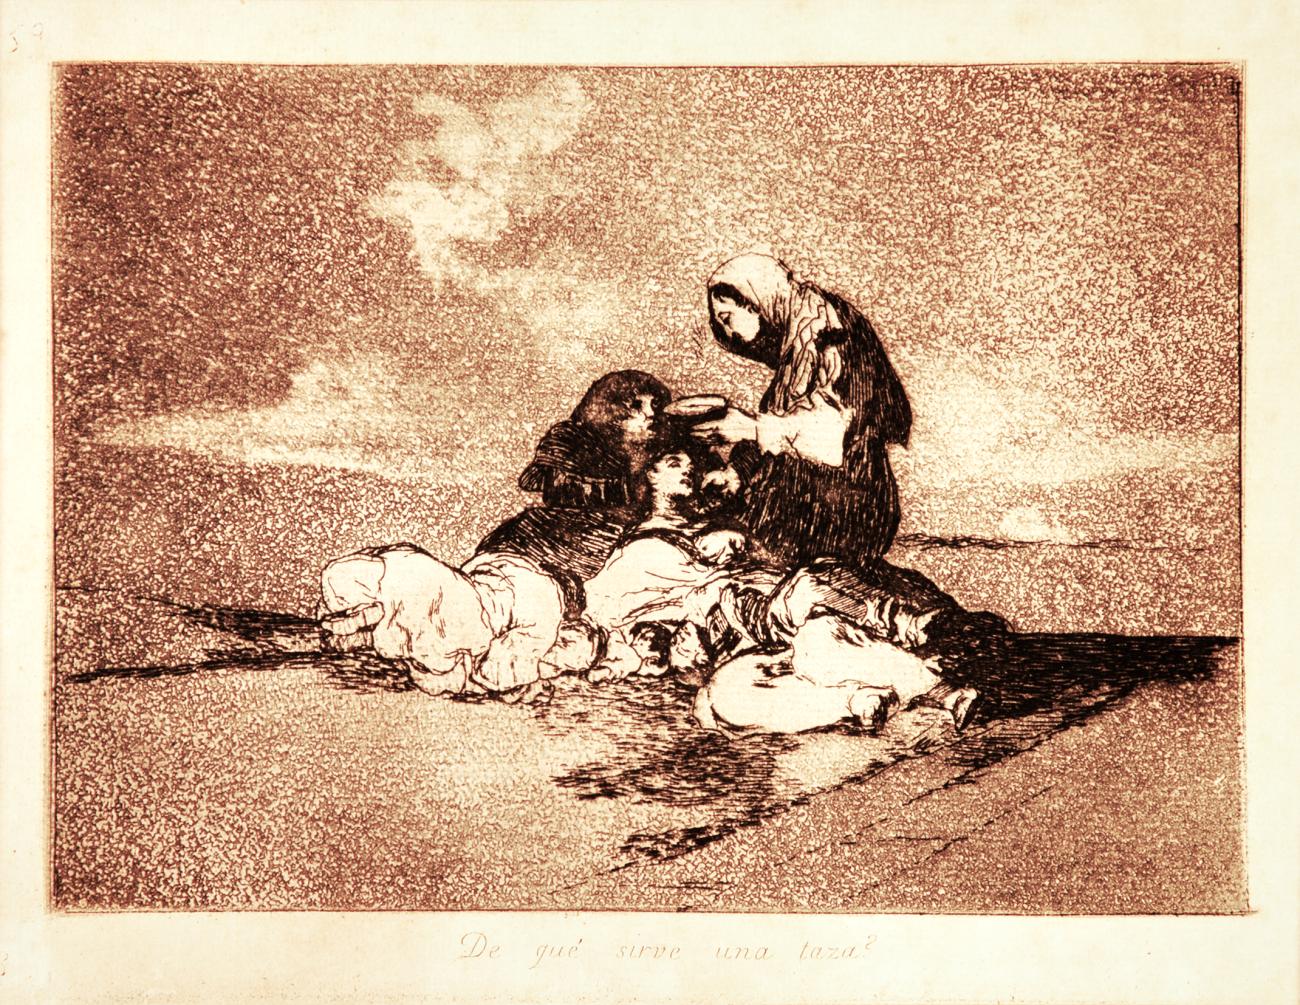 Goya_Francisco_De_que_sirve_una_taza.